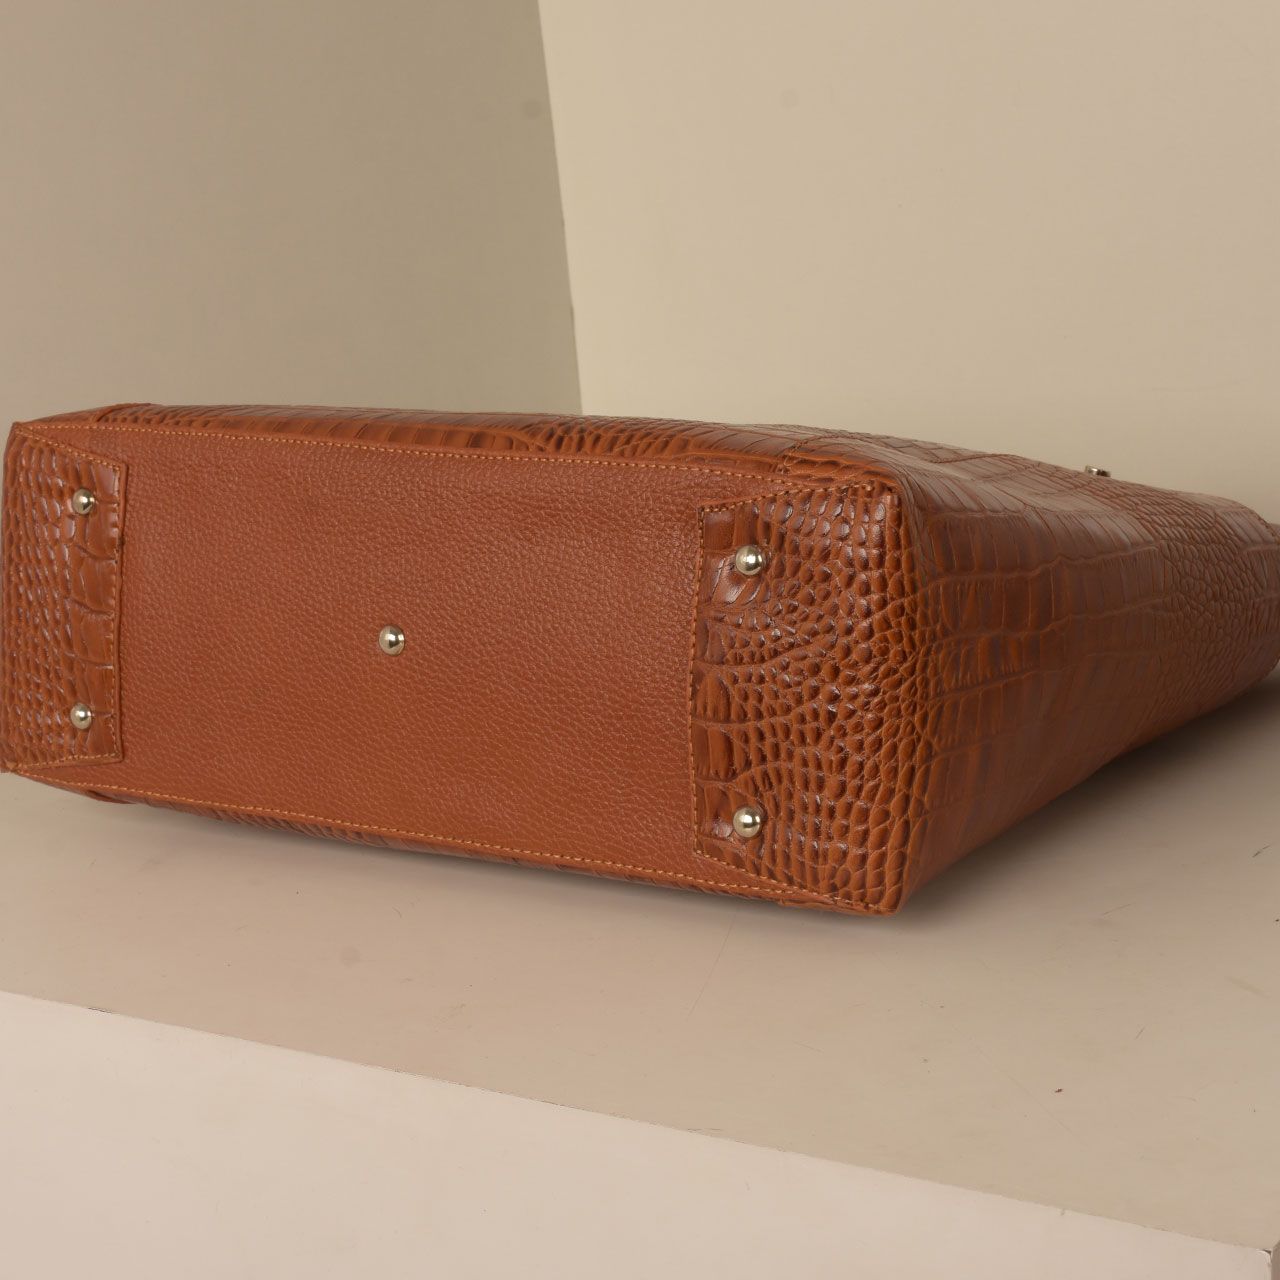  کیف دوشی زنانه پارینه چرم مدل V206-1 -  - 4